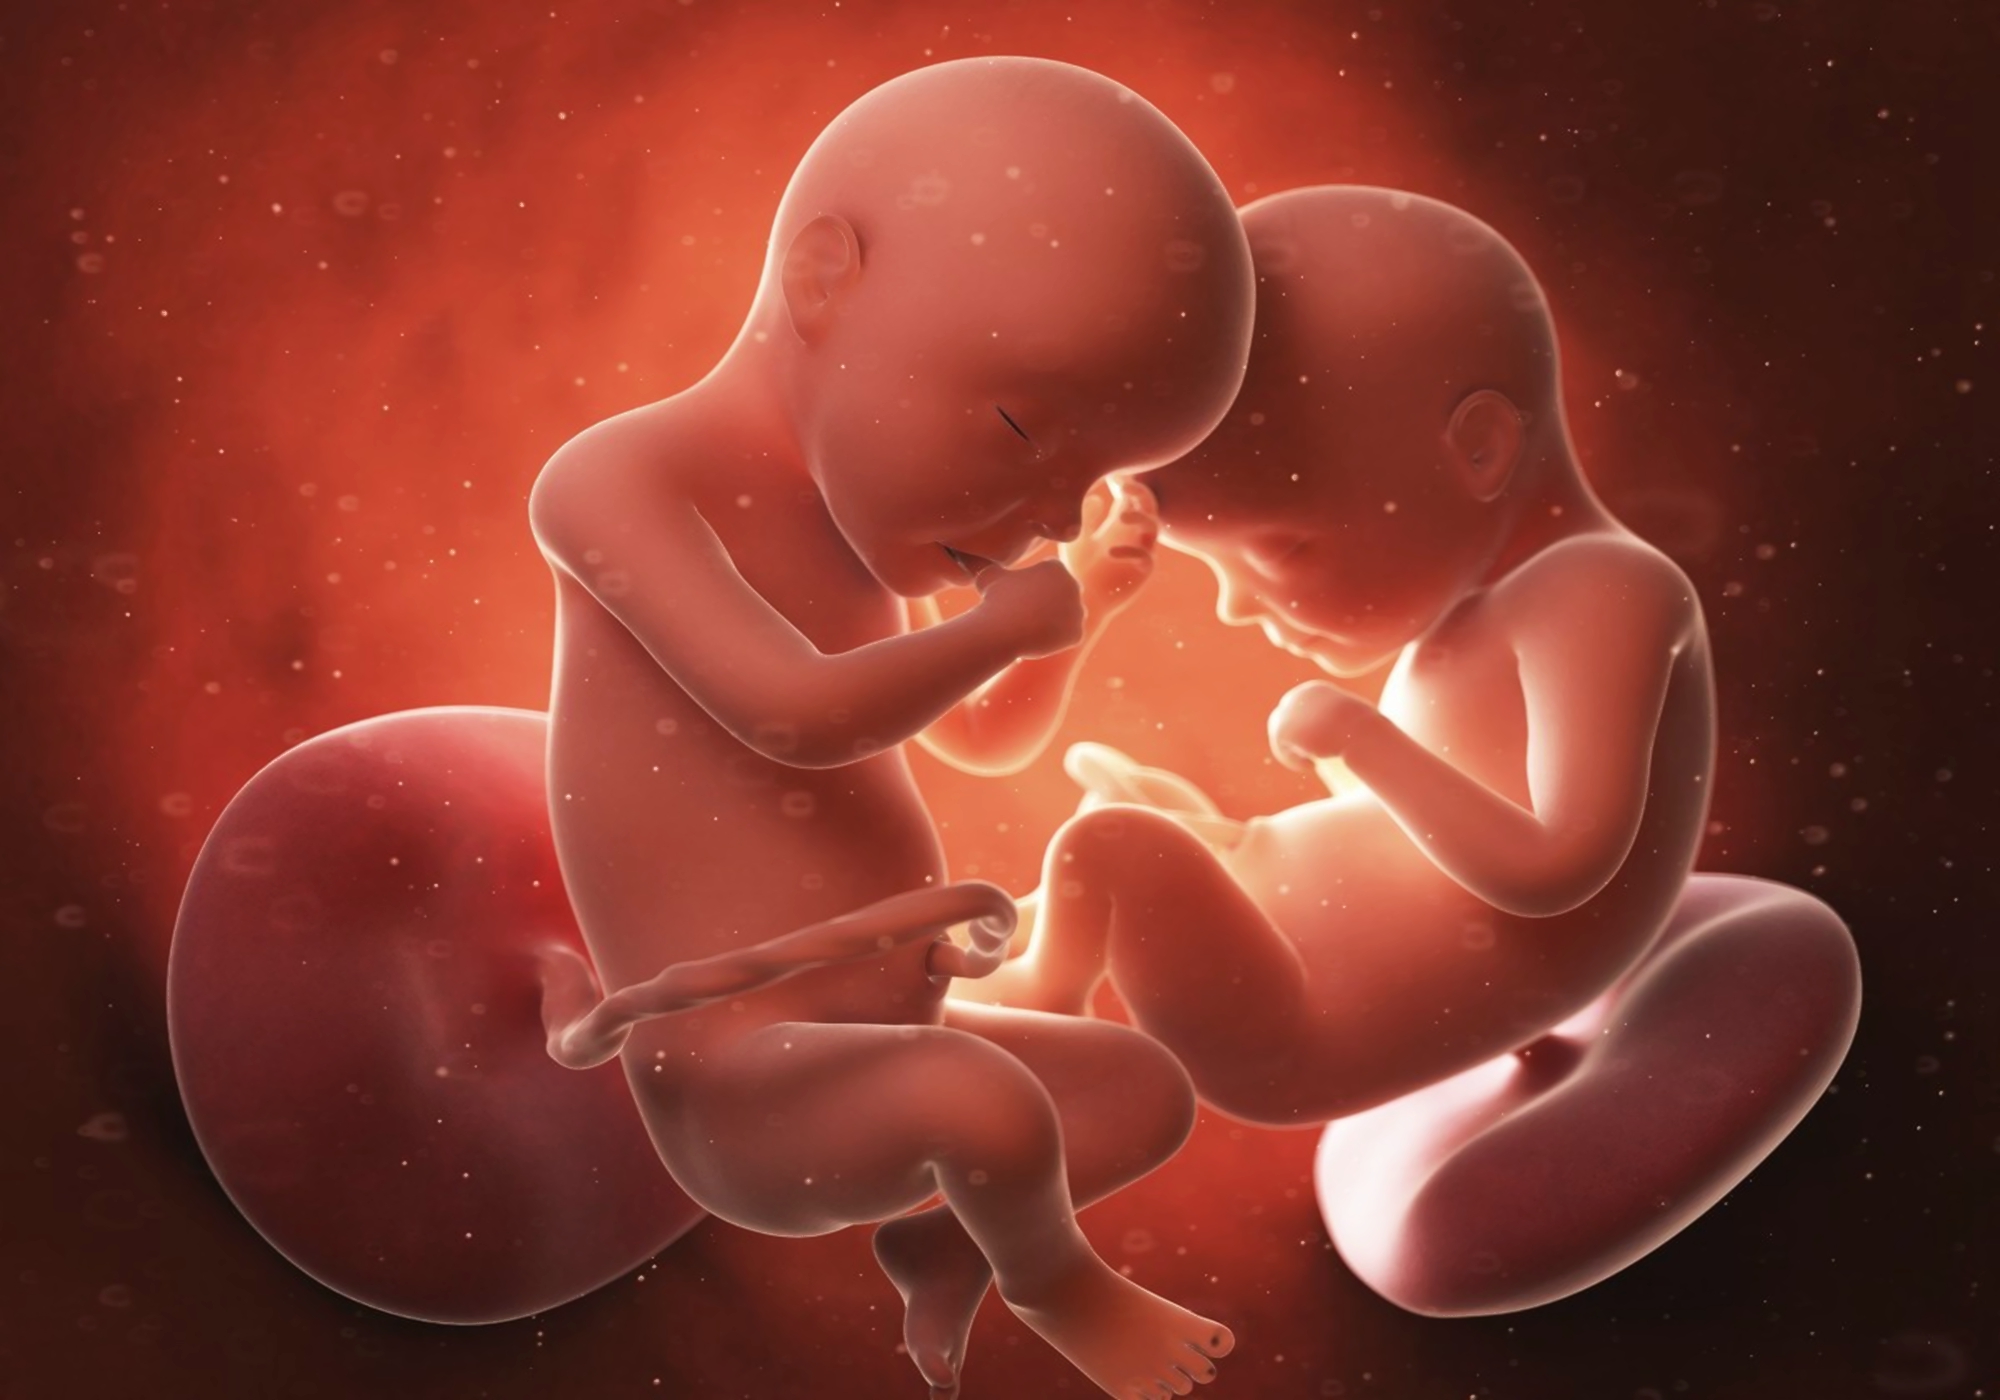 胎儿体型过大会导致开指慢